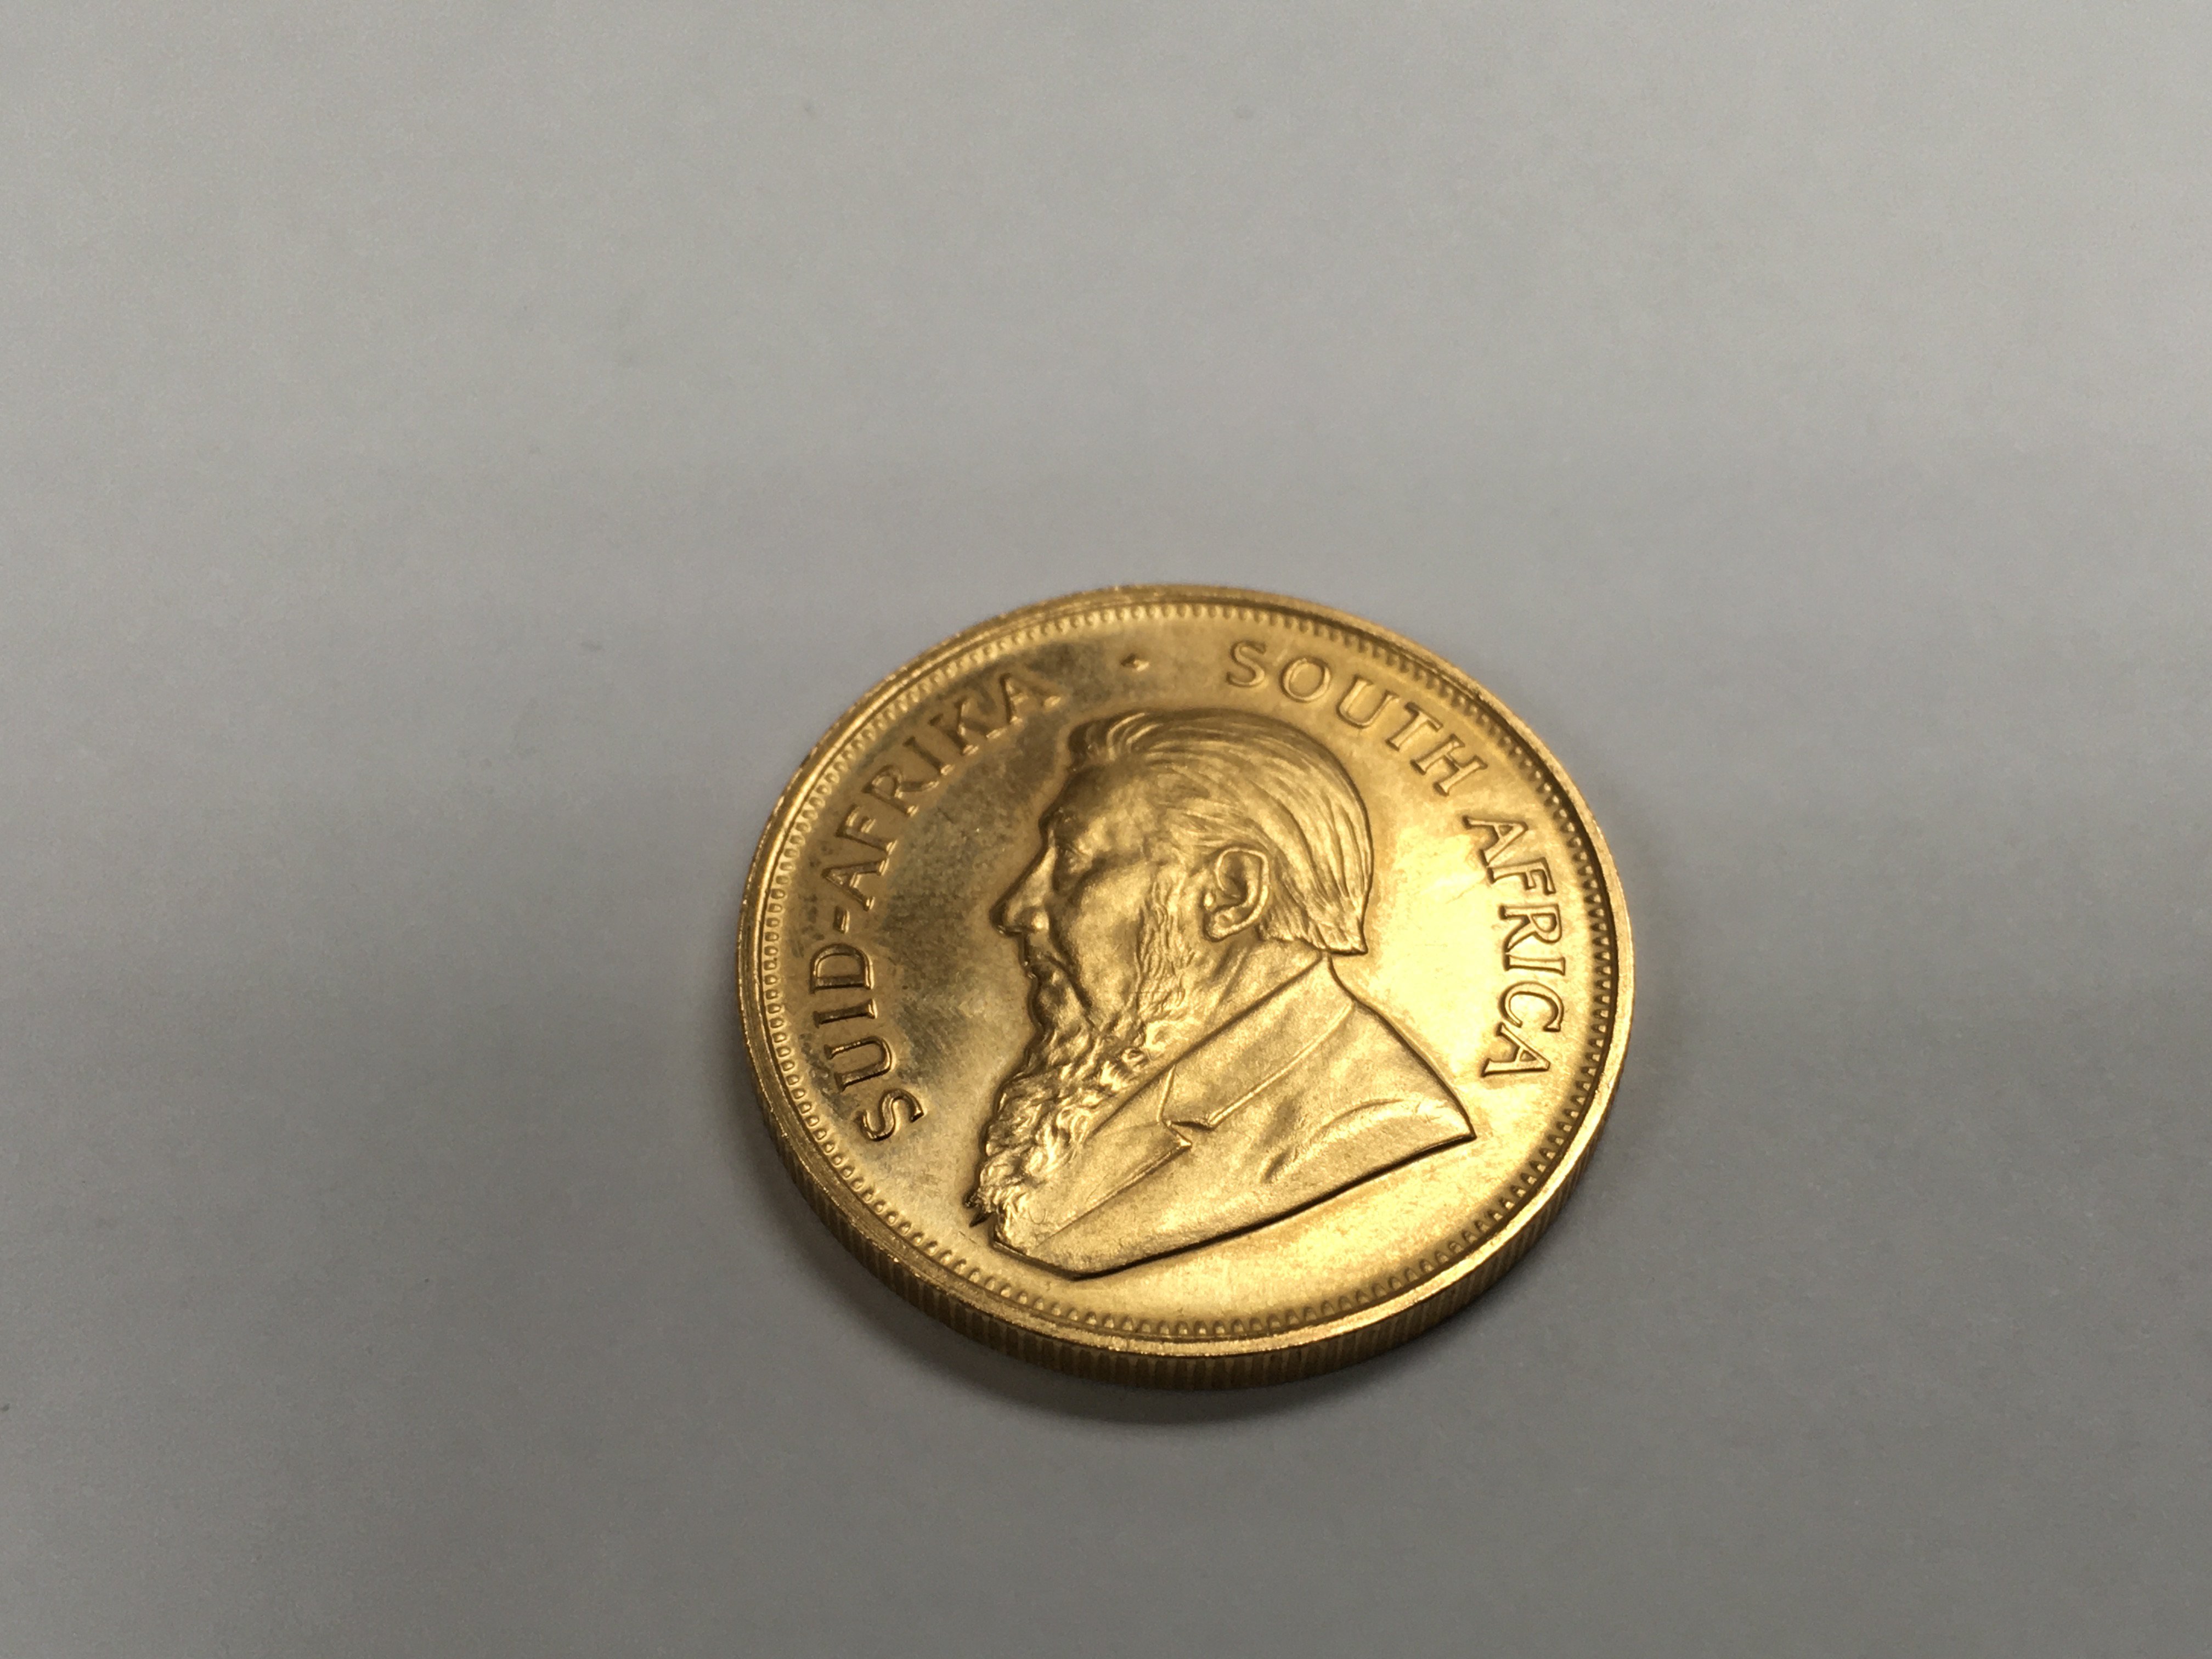 A 1974 1 oz gold krugerrand. - Image 2 of 2